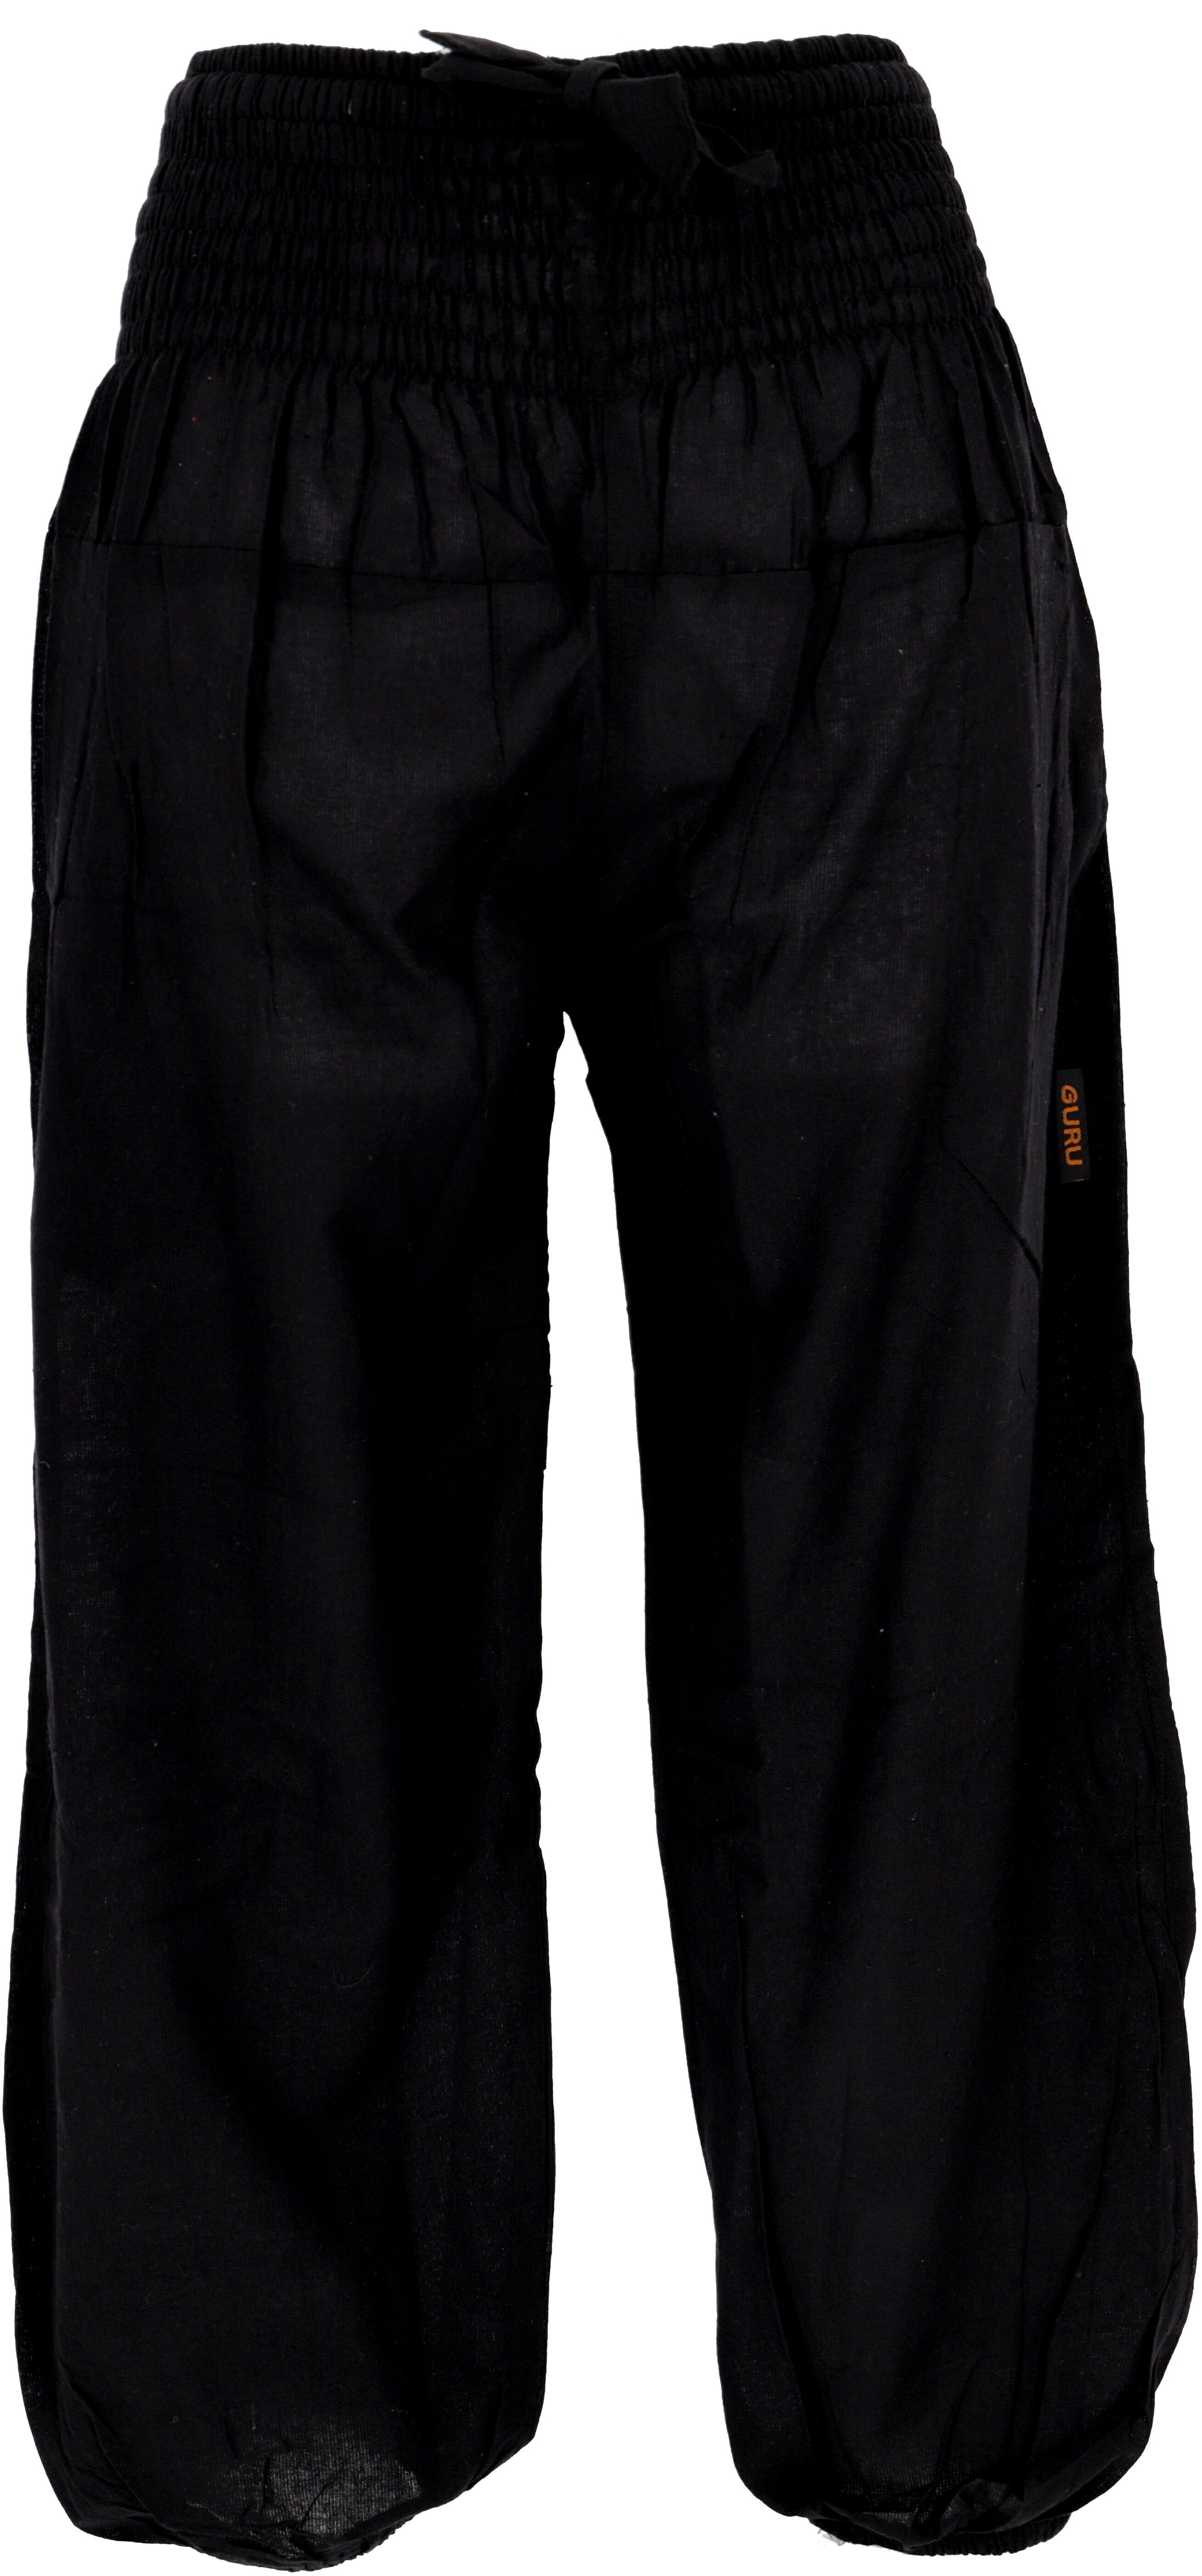 Guru-Shop Relaxhose Muckhose, Aladinhose mit breitem Bund - schwarz Ethno Style, alternative Bekleidung